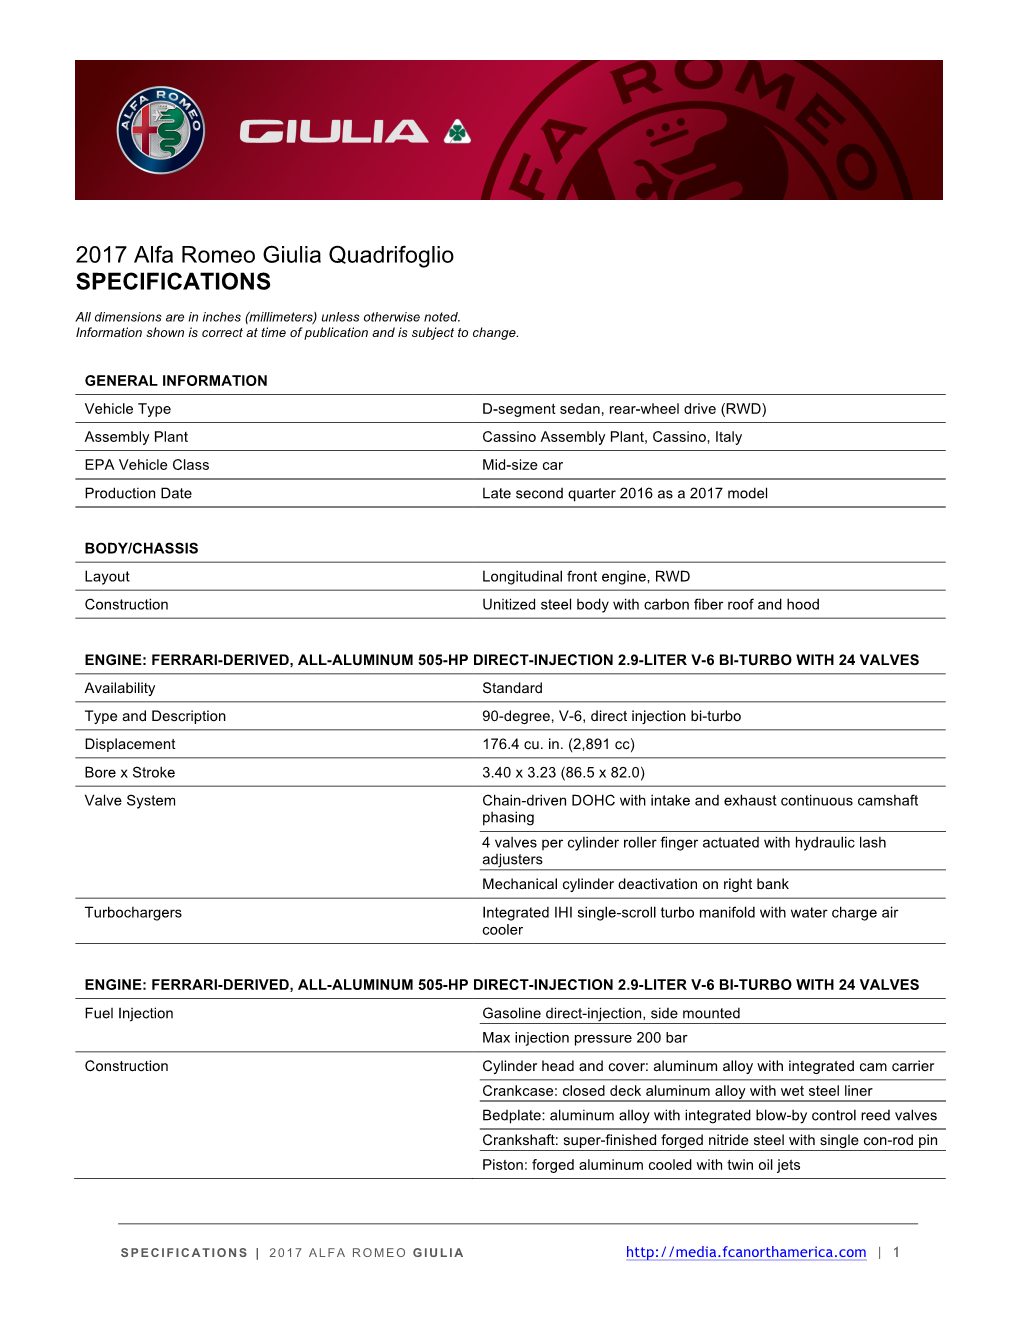 2017 Alfa Romeo Giulia Quadrifoglio SPECIFICATIONS